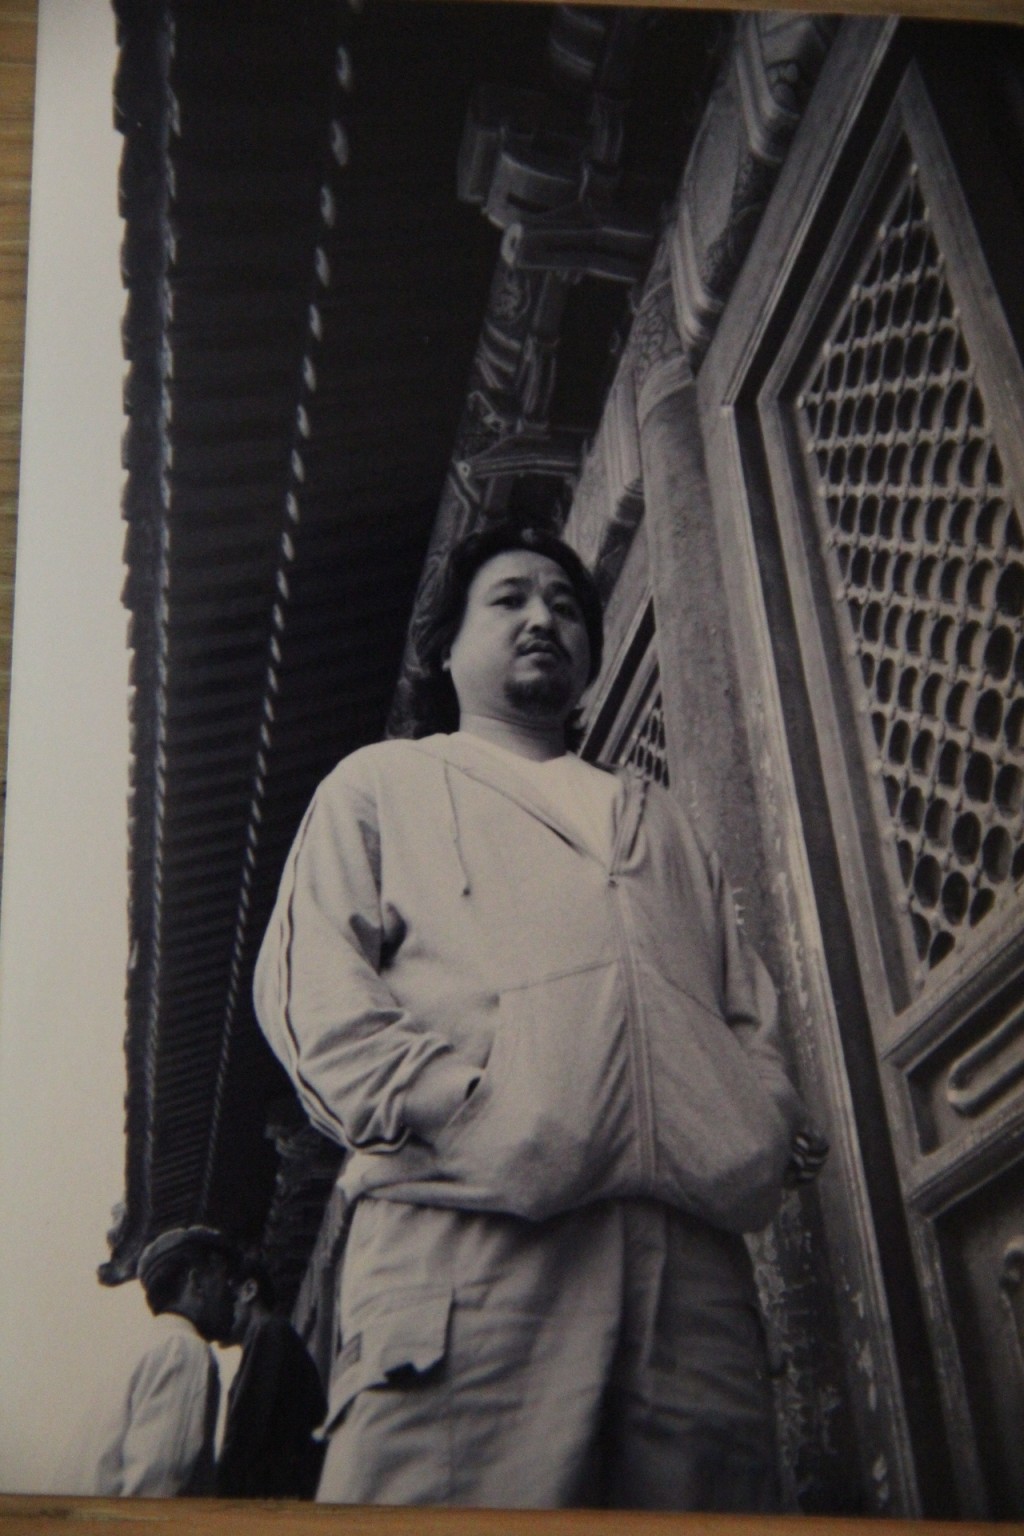 古明華早年在北京拍攝劇集《談談情練練武》。